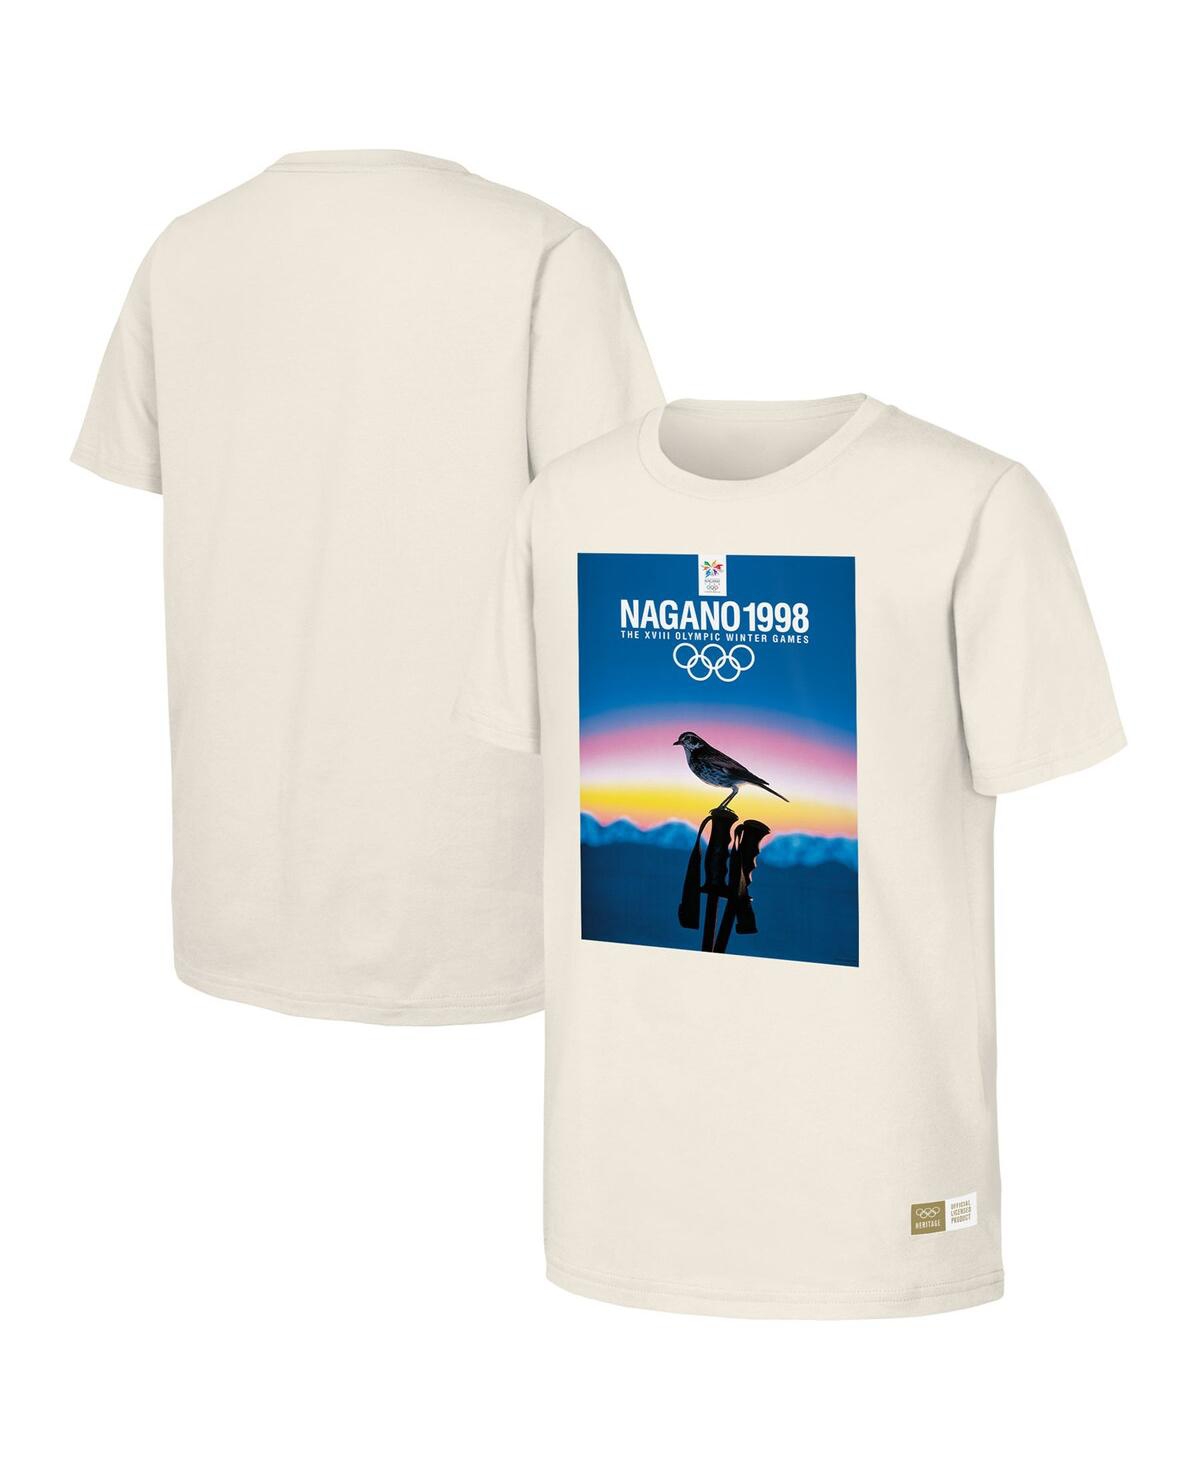 Men's Natural 1998 Nagano Games Olympic Heritage T-shirt - Natural